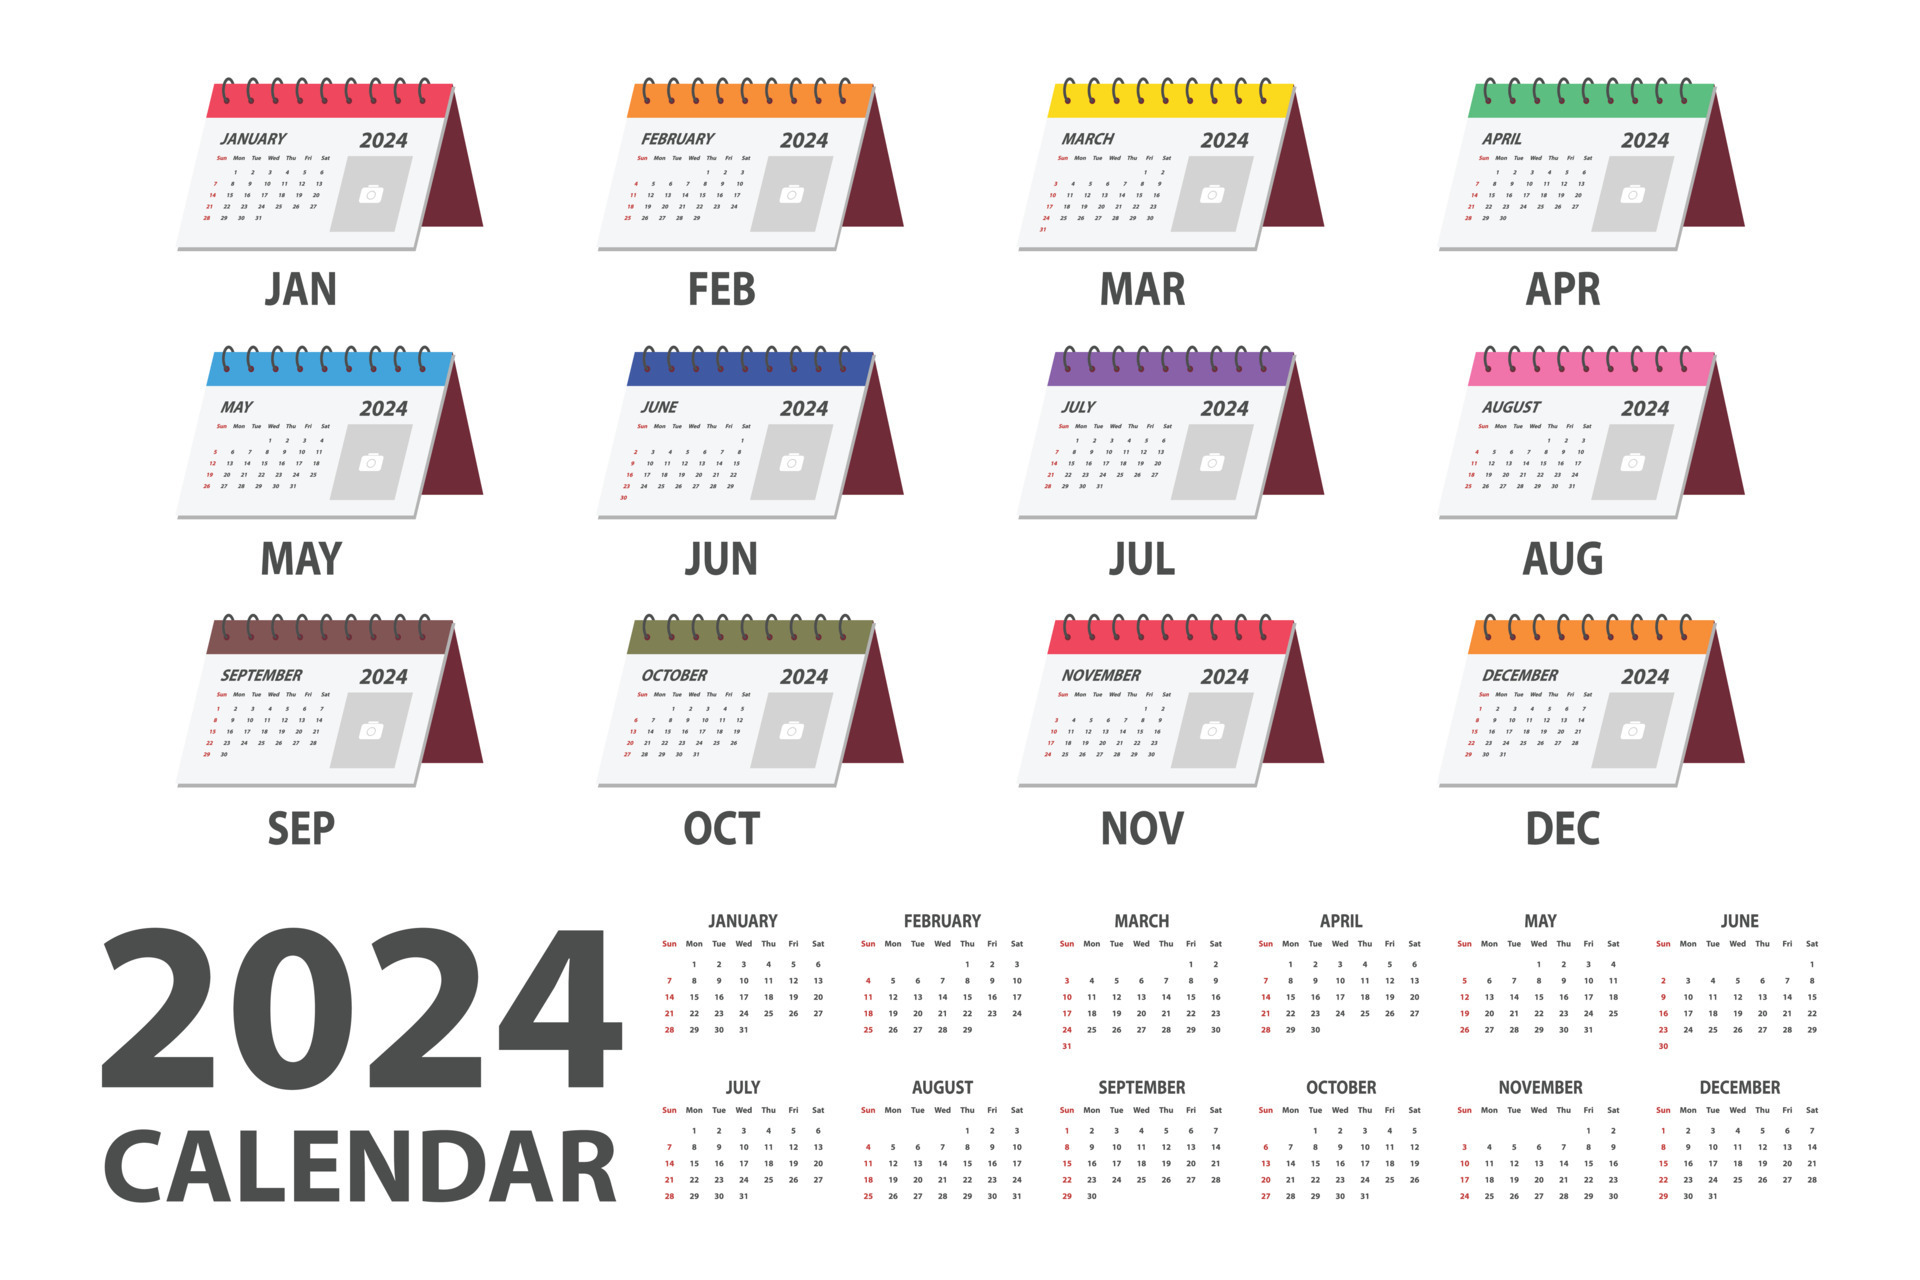 Calendar 2024 - All months 26819241 Vector Art at Vecteezy